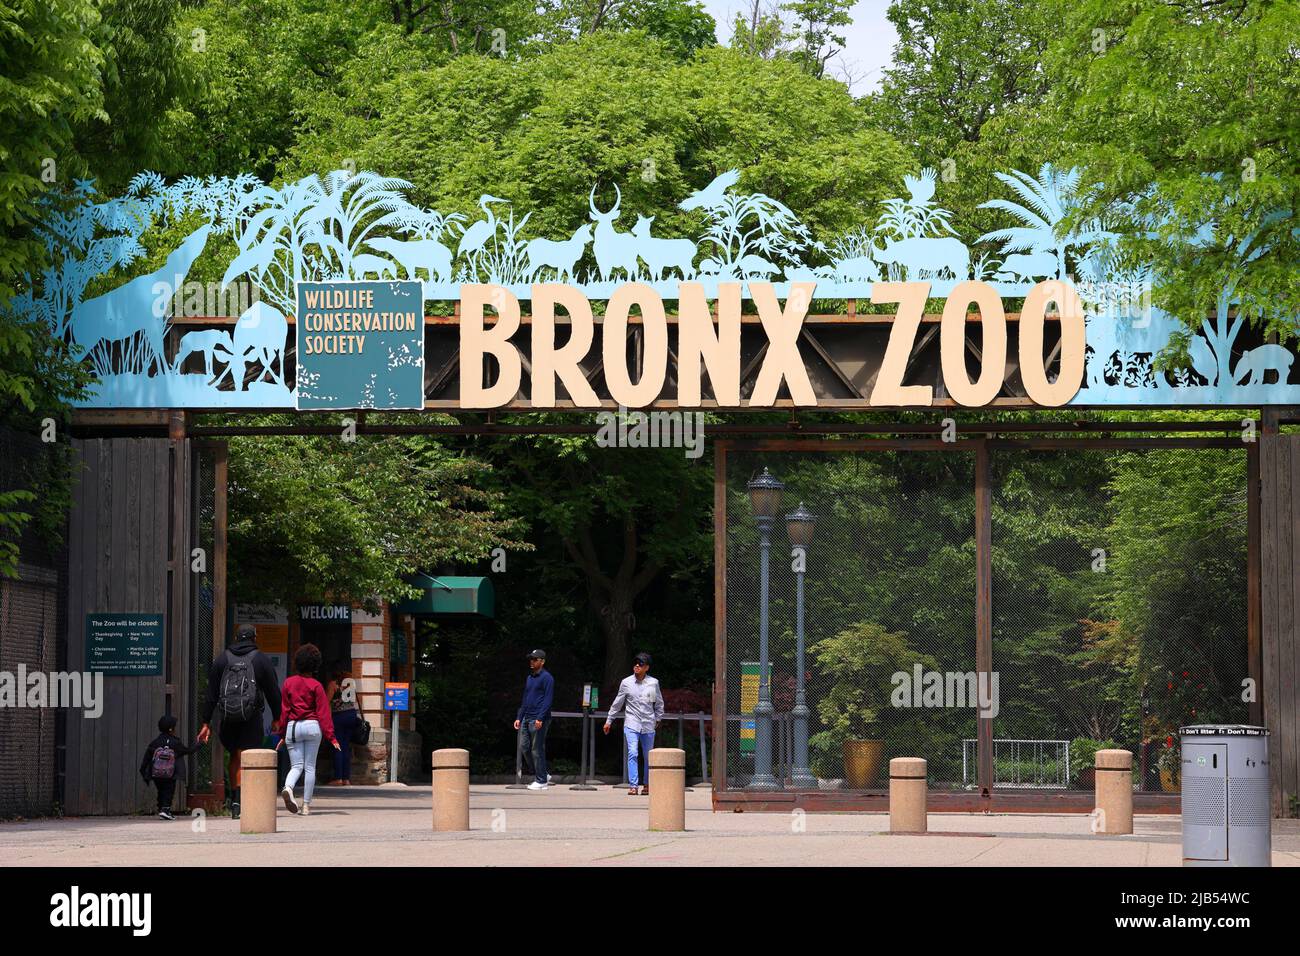 Persone che entrano nello Zoo Bronx attraverso l'Asia Gate. Il Bronx Zoo è un grande zoo urbano a New York, gestito dalla Wildlife Conservation Society Foto Stock